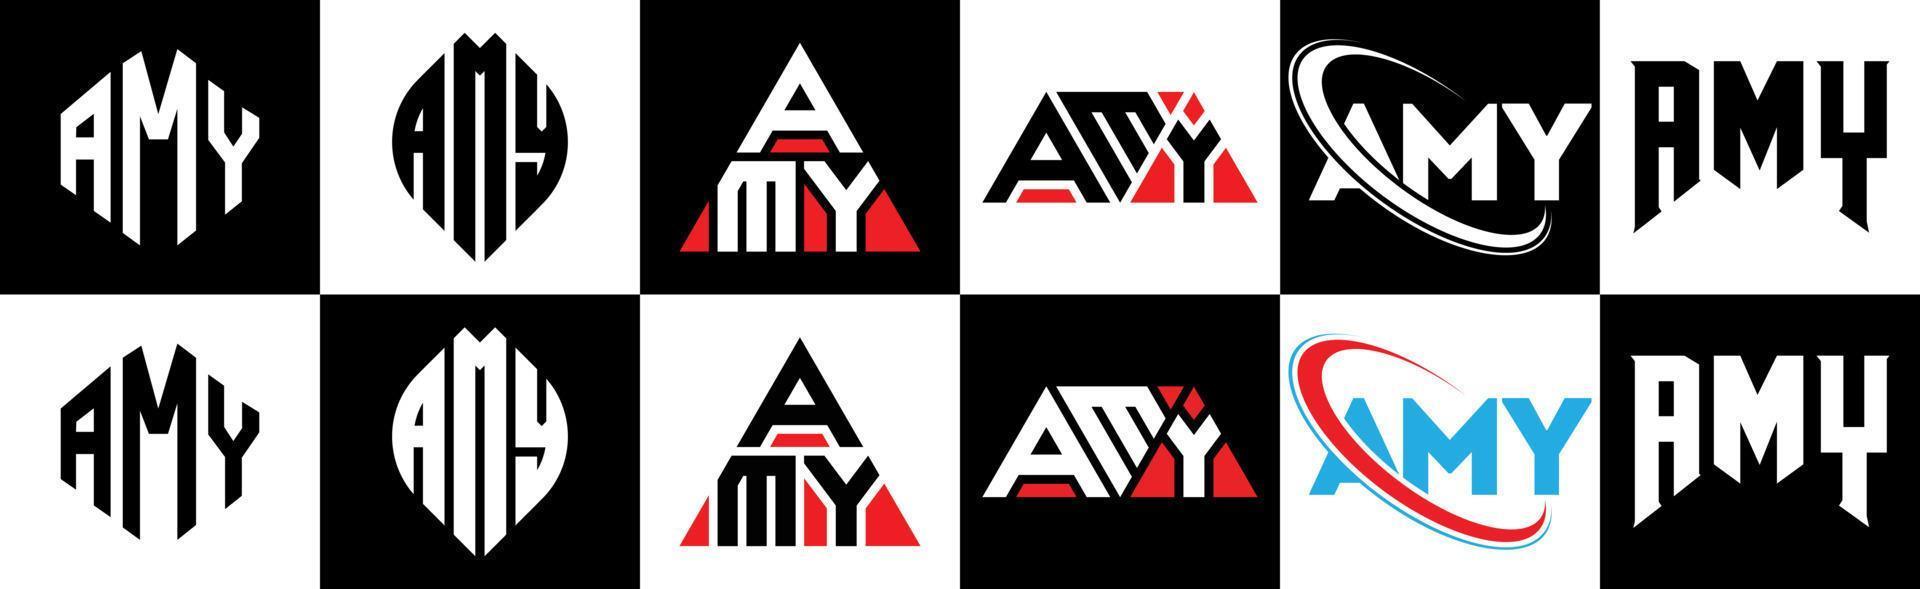 création de logo amy letter en six styles. amy polygone, cercle, triangle, hexagone, style plat et simple avec logo de lettre de variation de couleur noir et blanc dans un plan de travail. amy logo minimaliste et classique vecteur